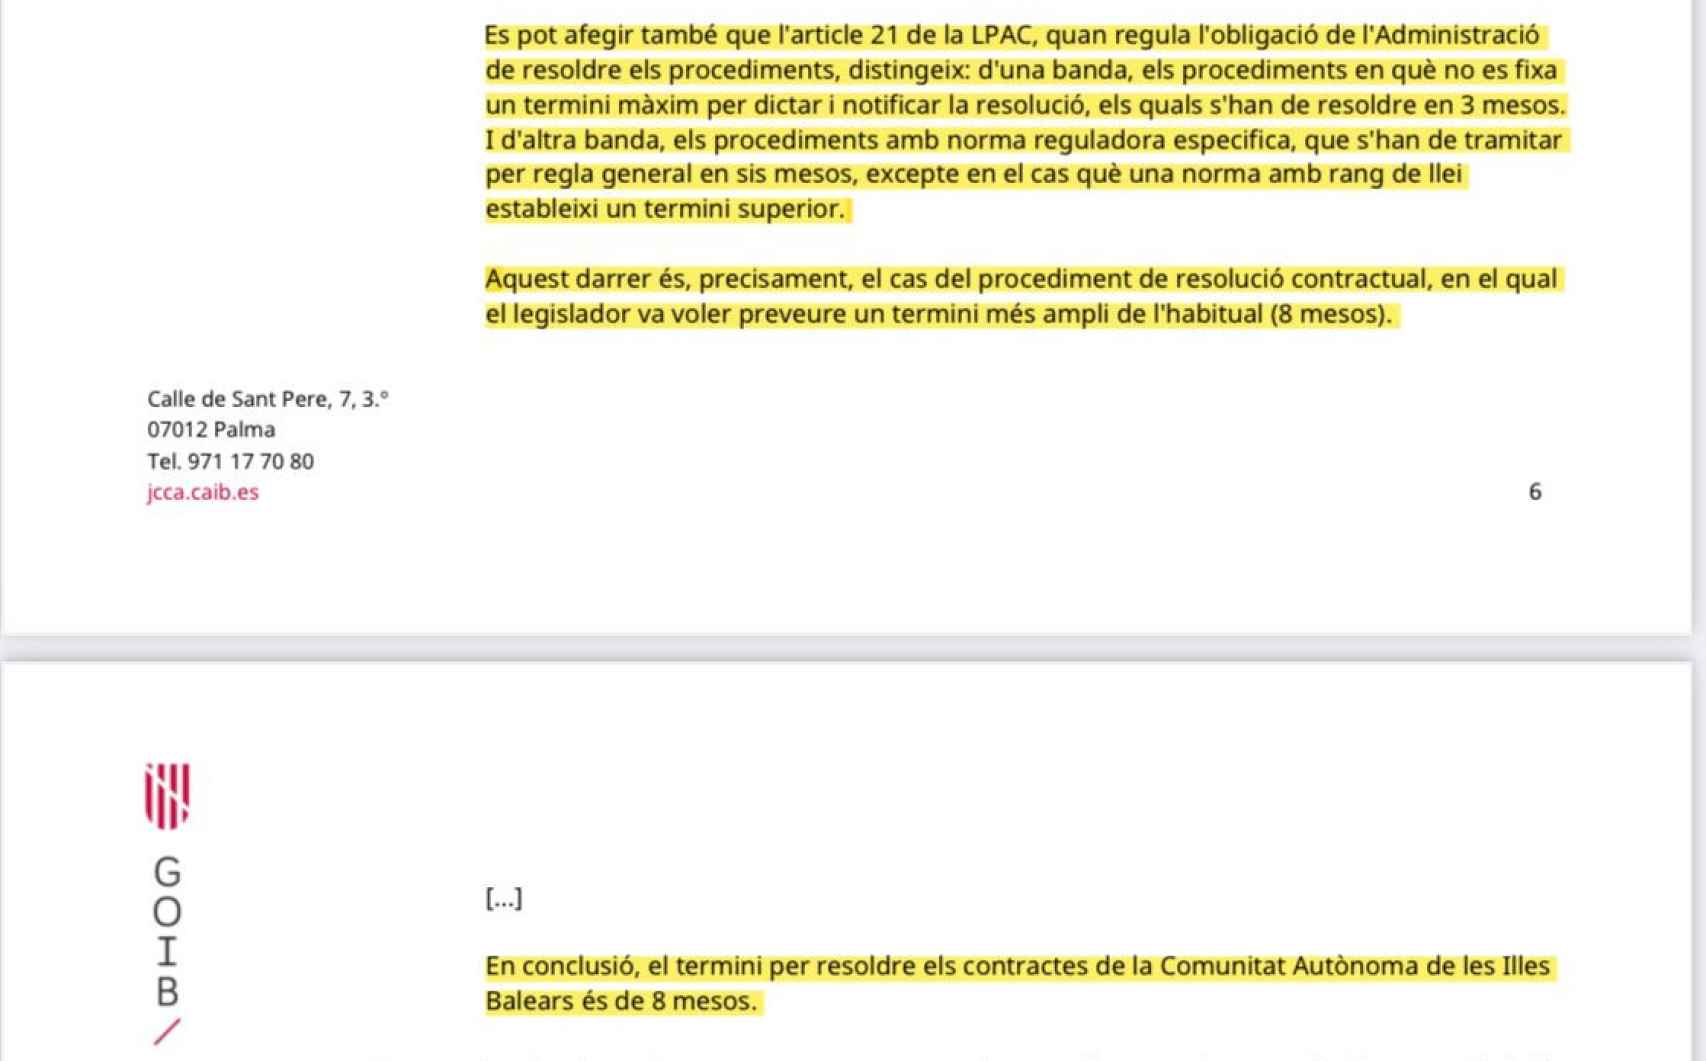 Extracto de un documento de la Junta Consultiva de Contratación del Gobierno de las Islas Baleares.